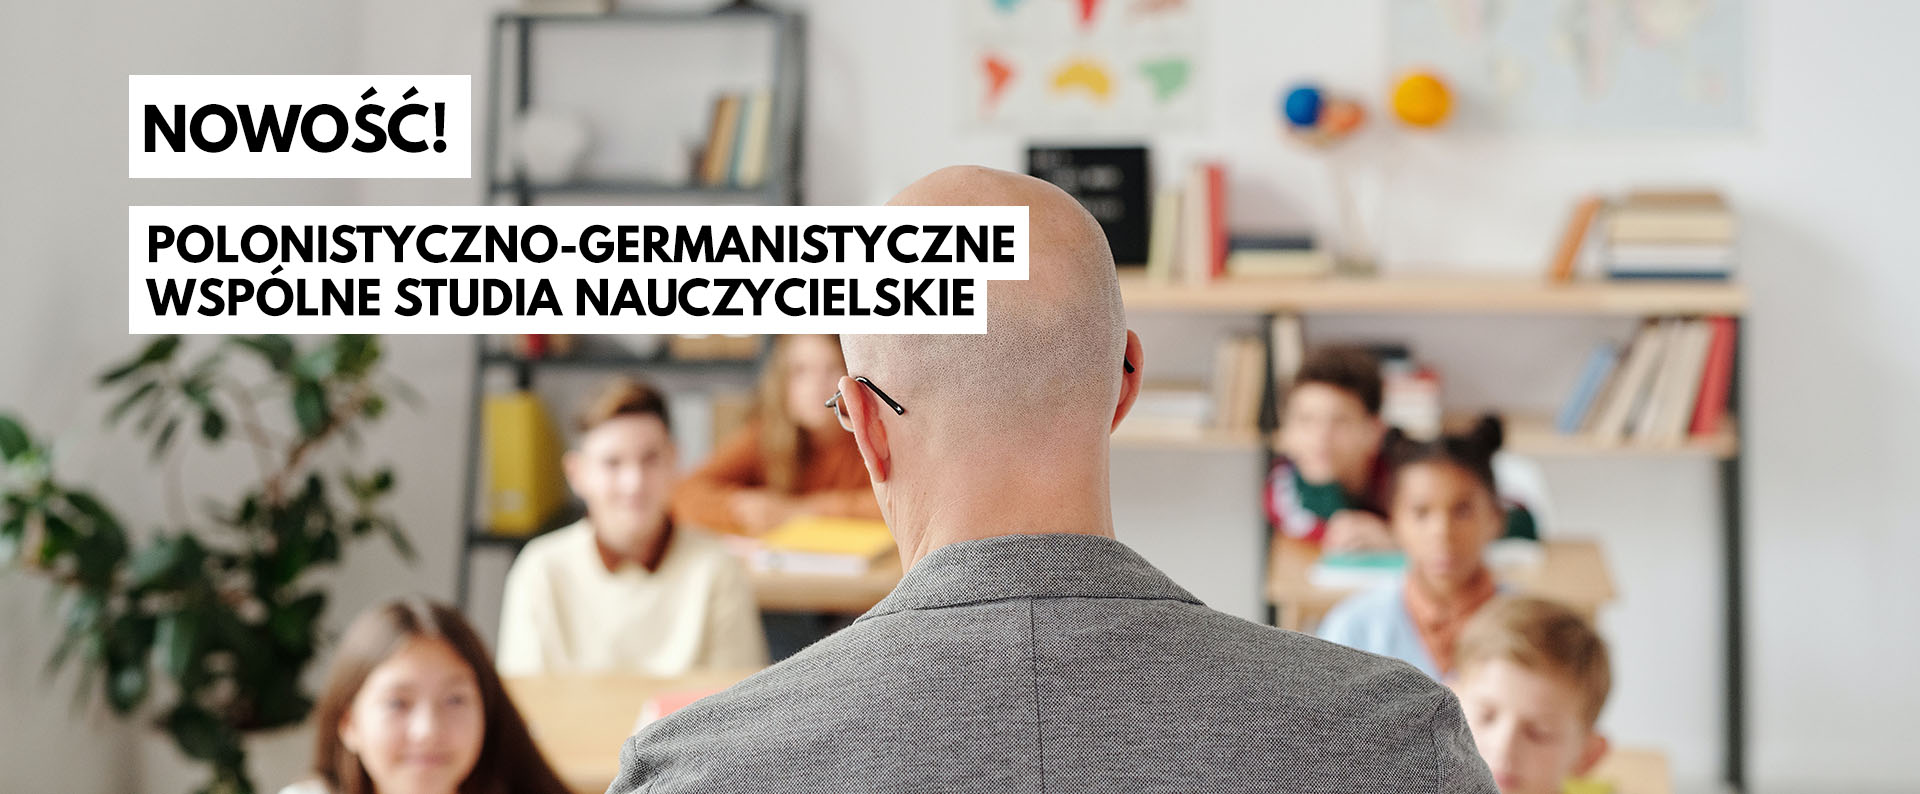 polonistyczno-germanistyczne wspólne studia nauczycielskie